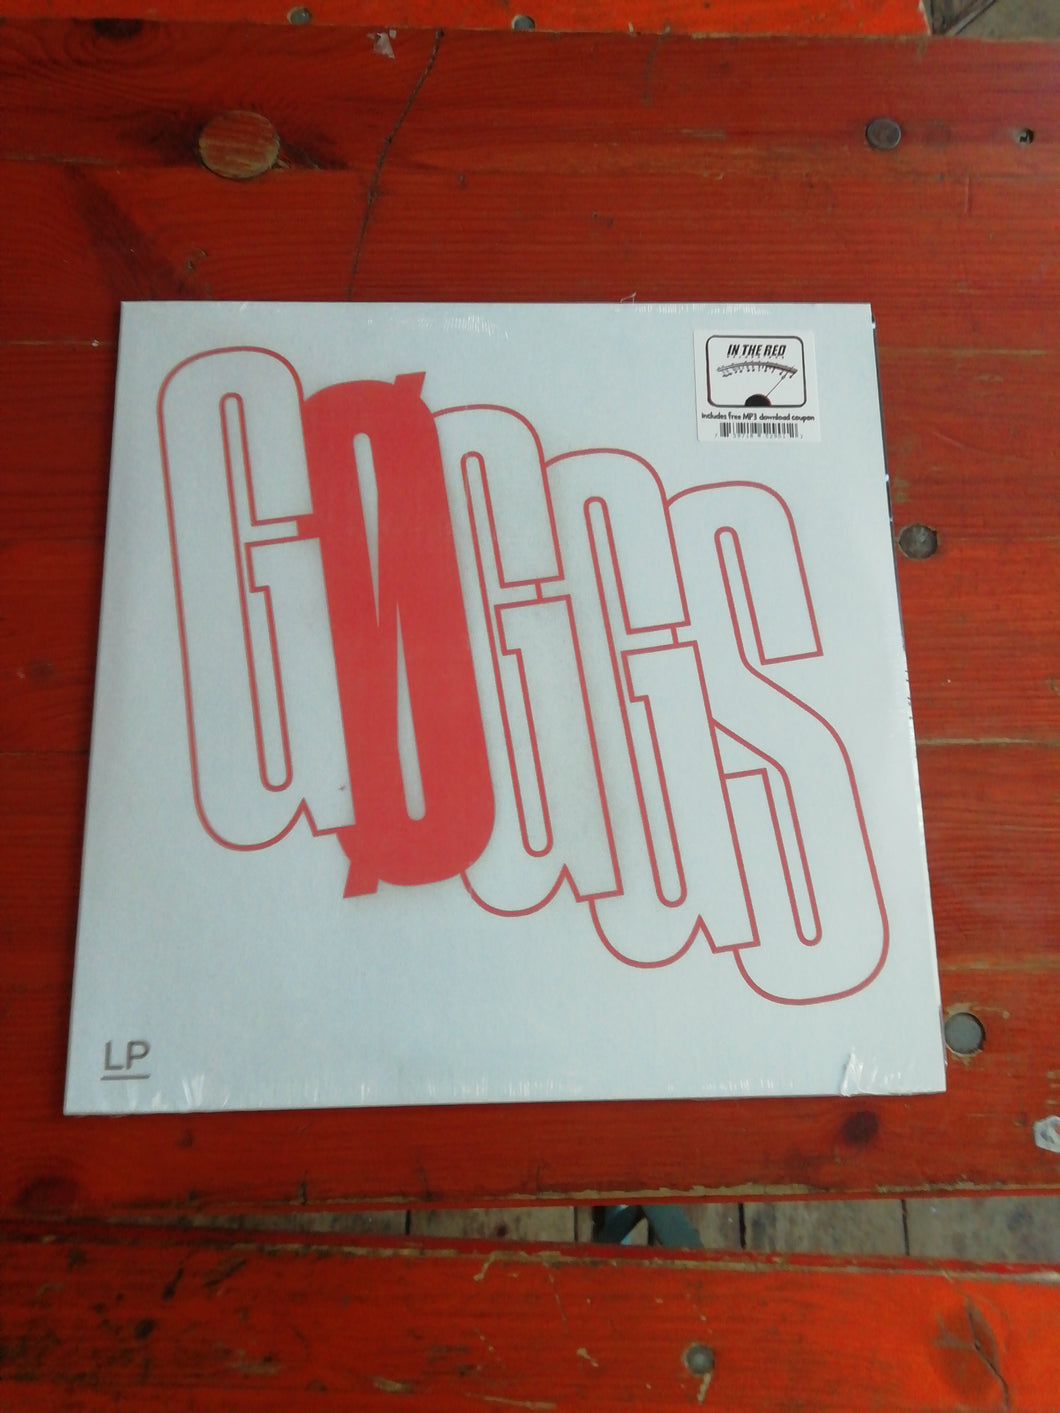 Goggs - Goggs